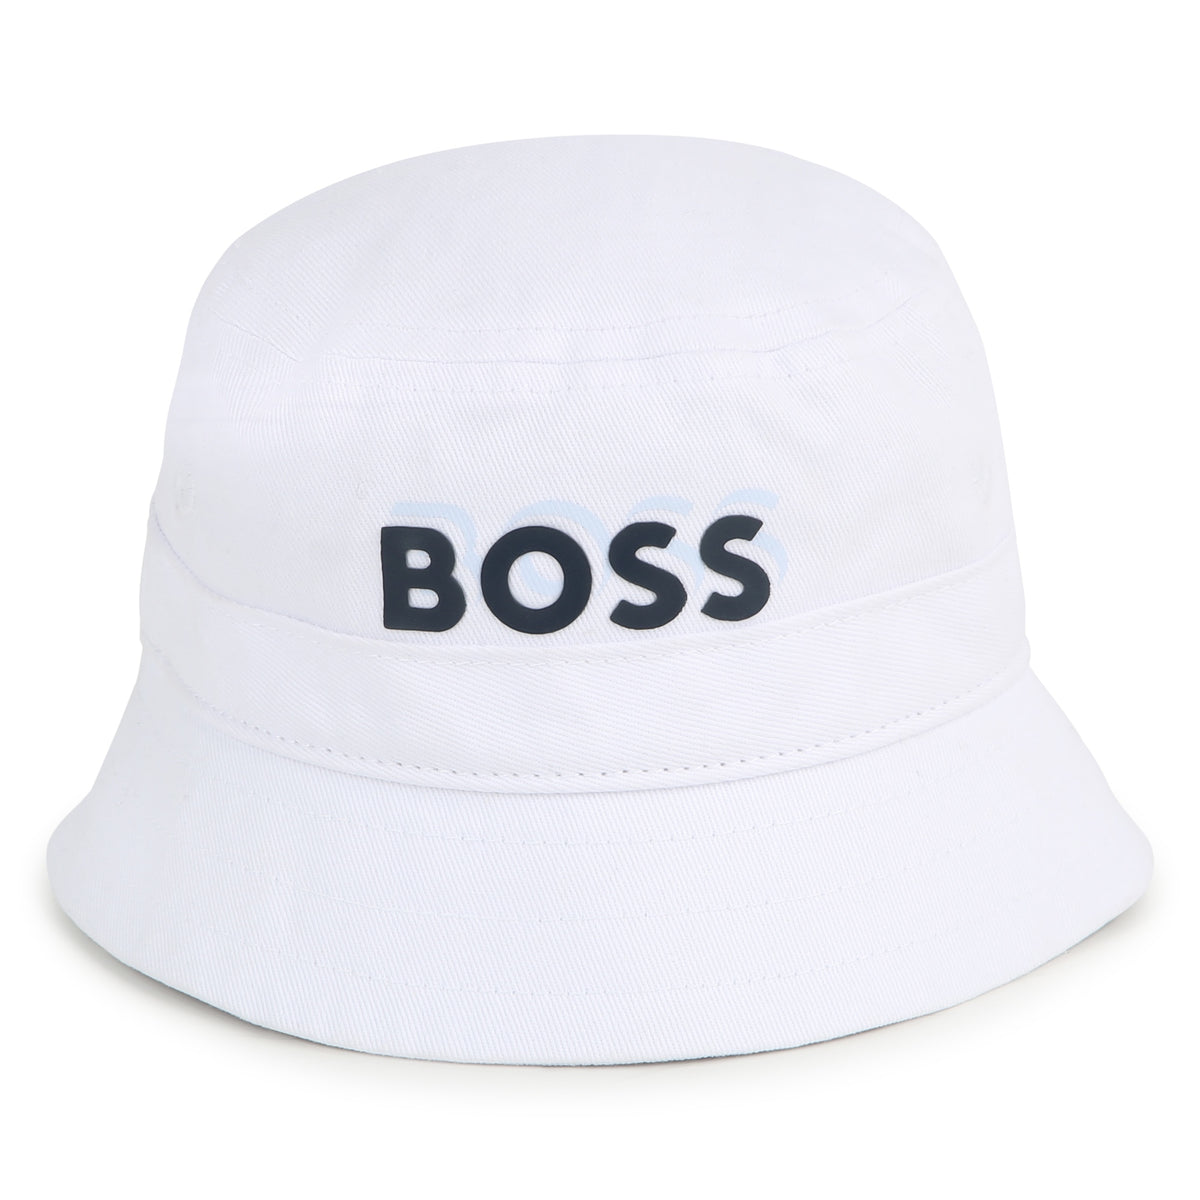 Boss Baby White Bucket Hat